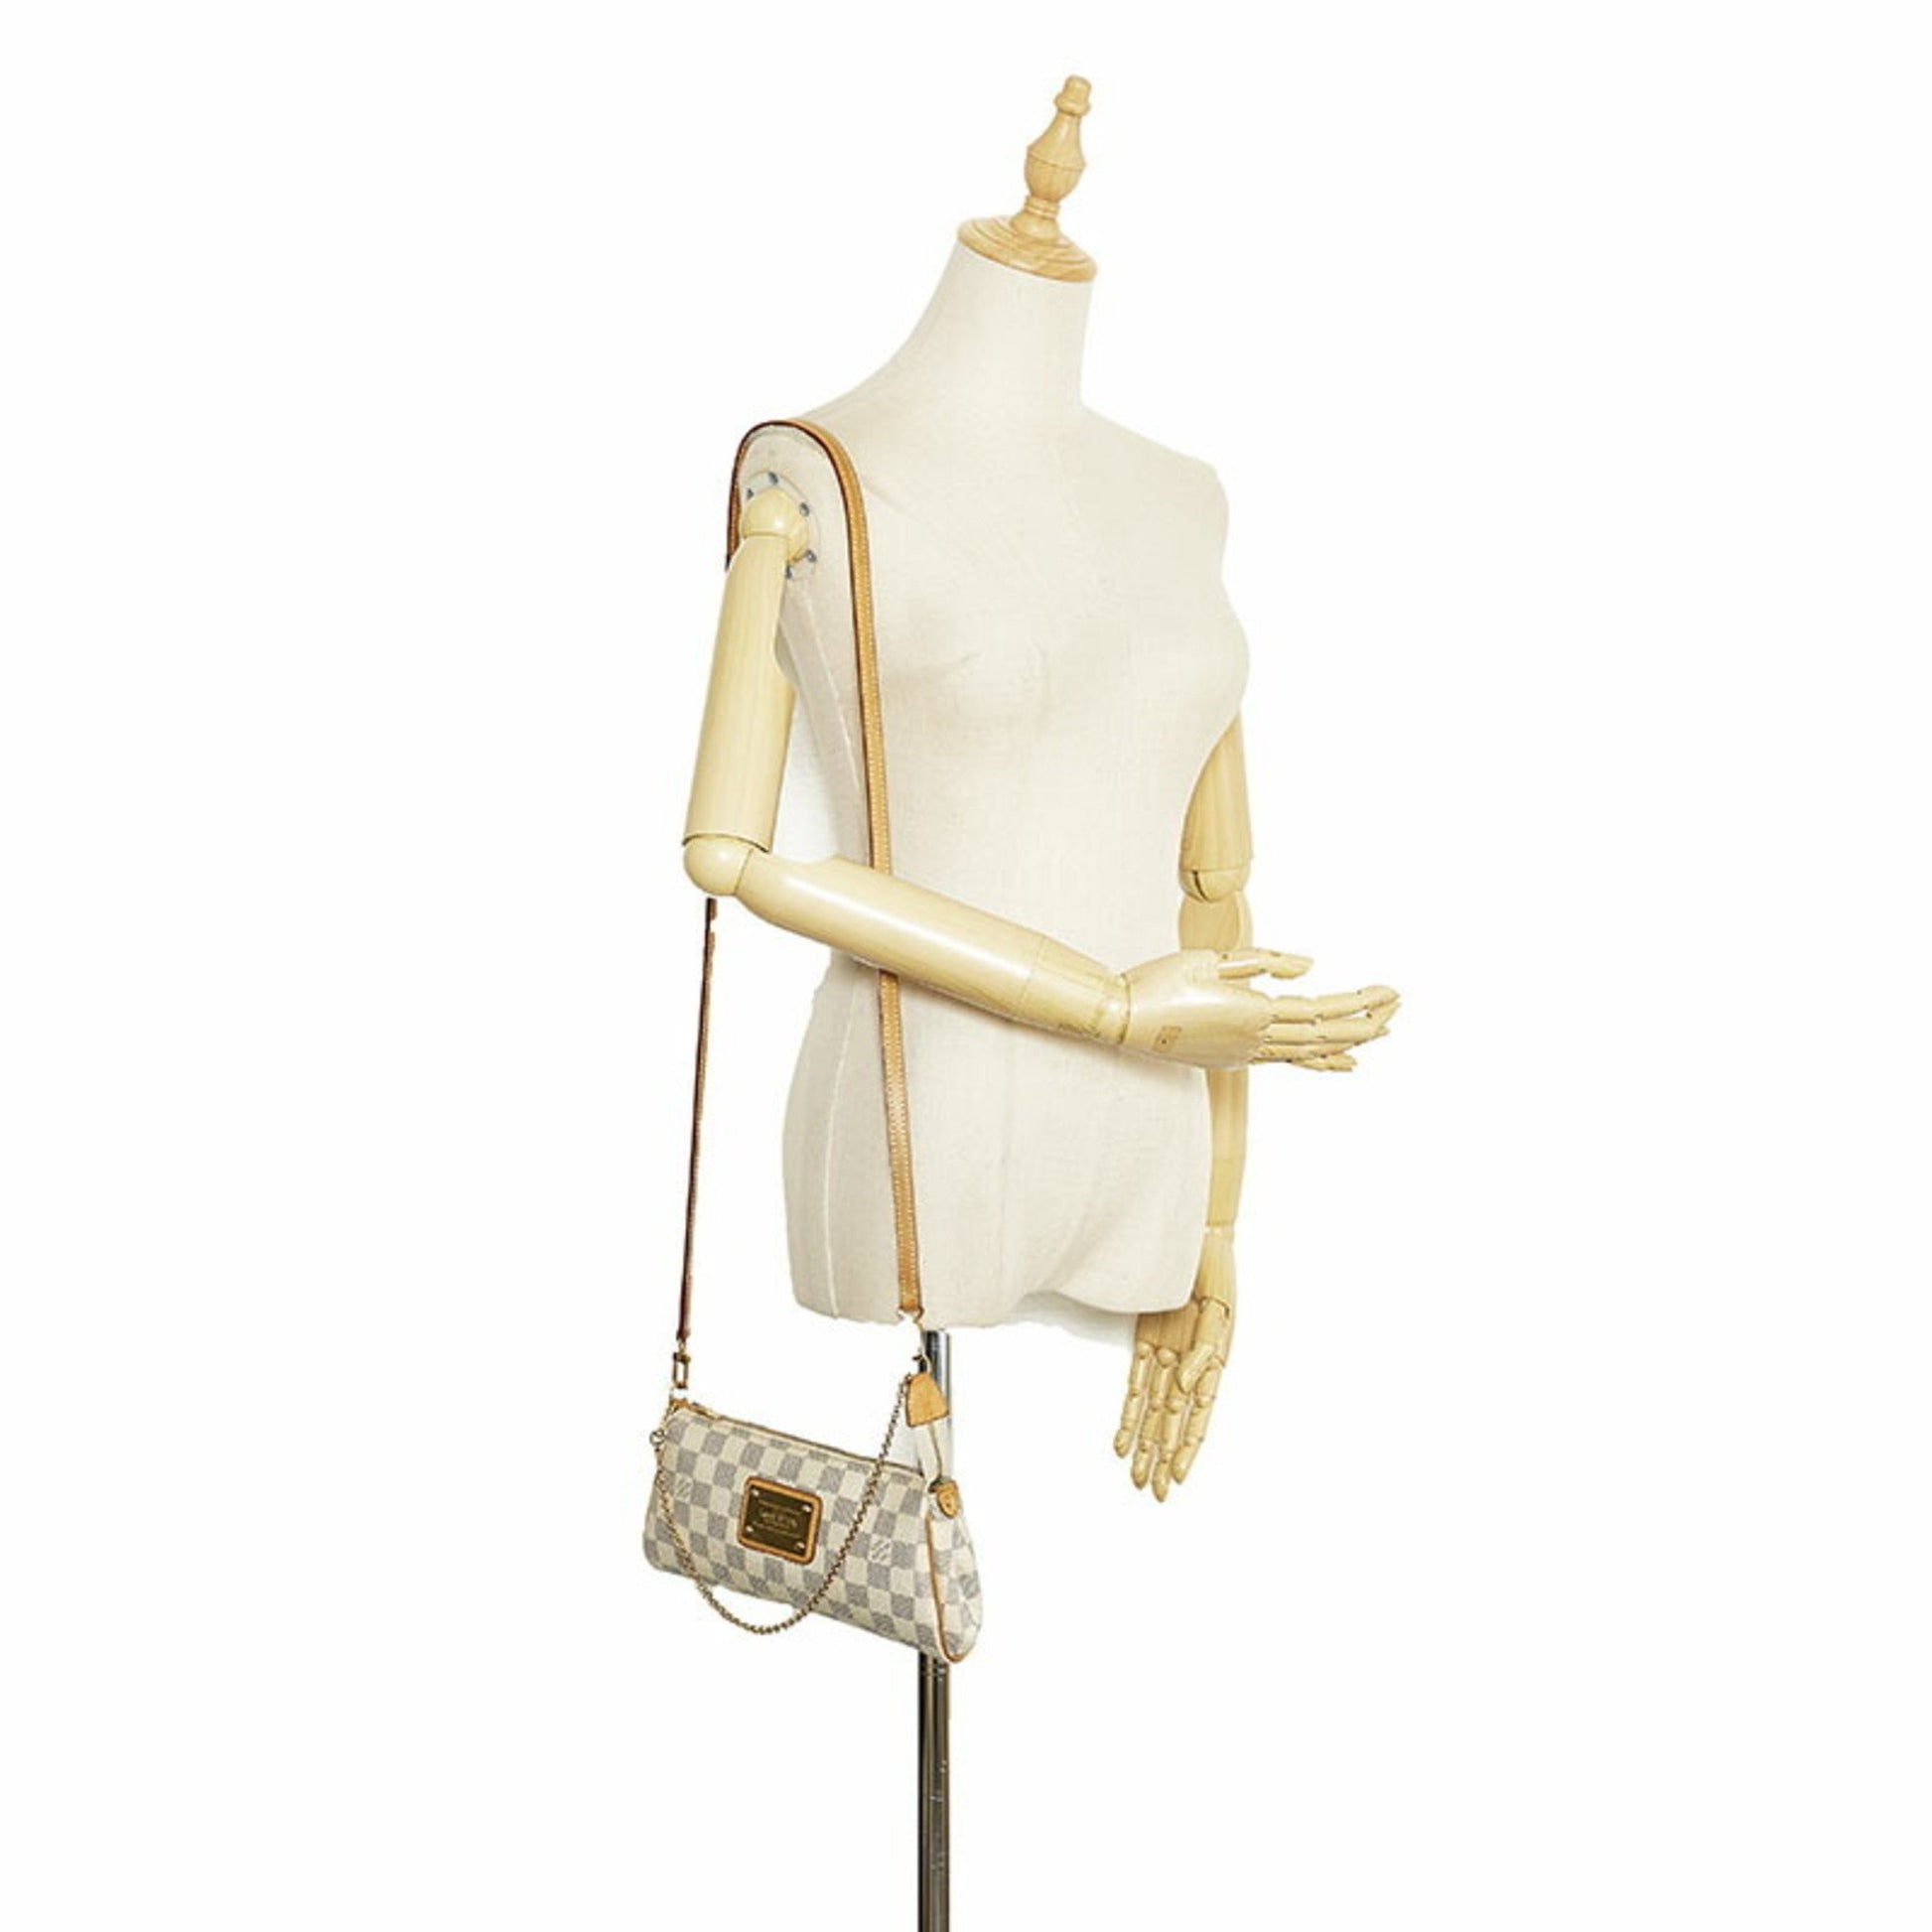 Louis Vuitton Damier Azur Eva Chain Shoulder Bag Handbag N55214 White Pvc  Leather Women's Louis Auction